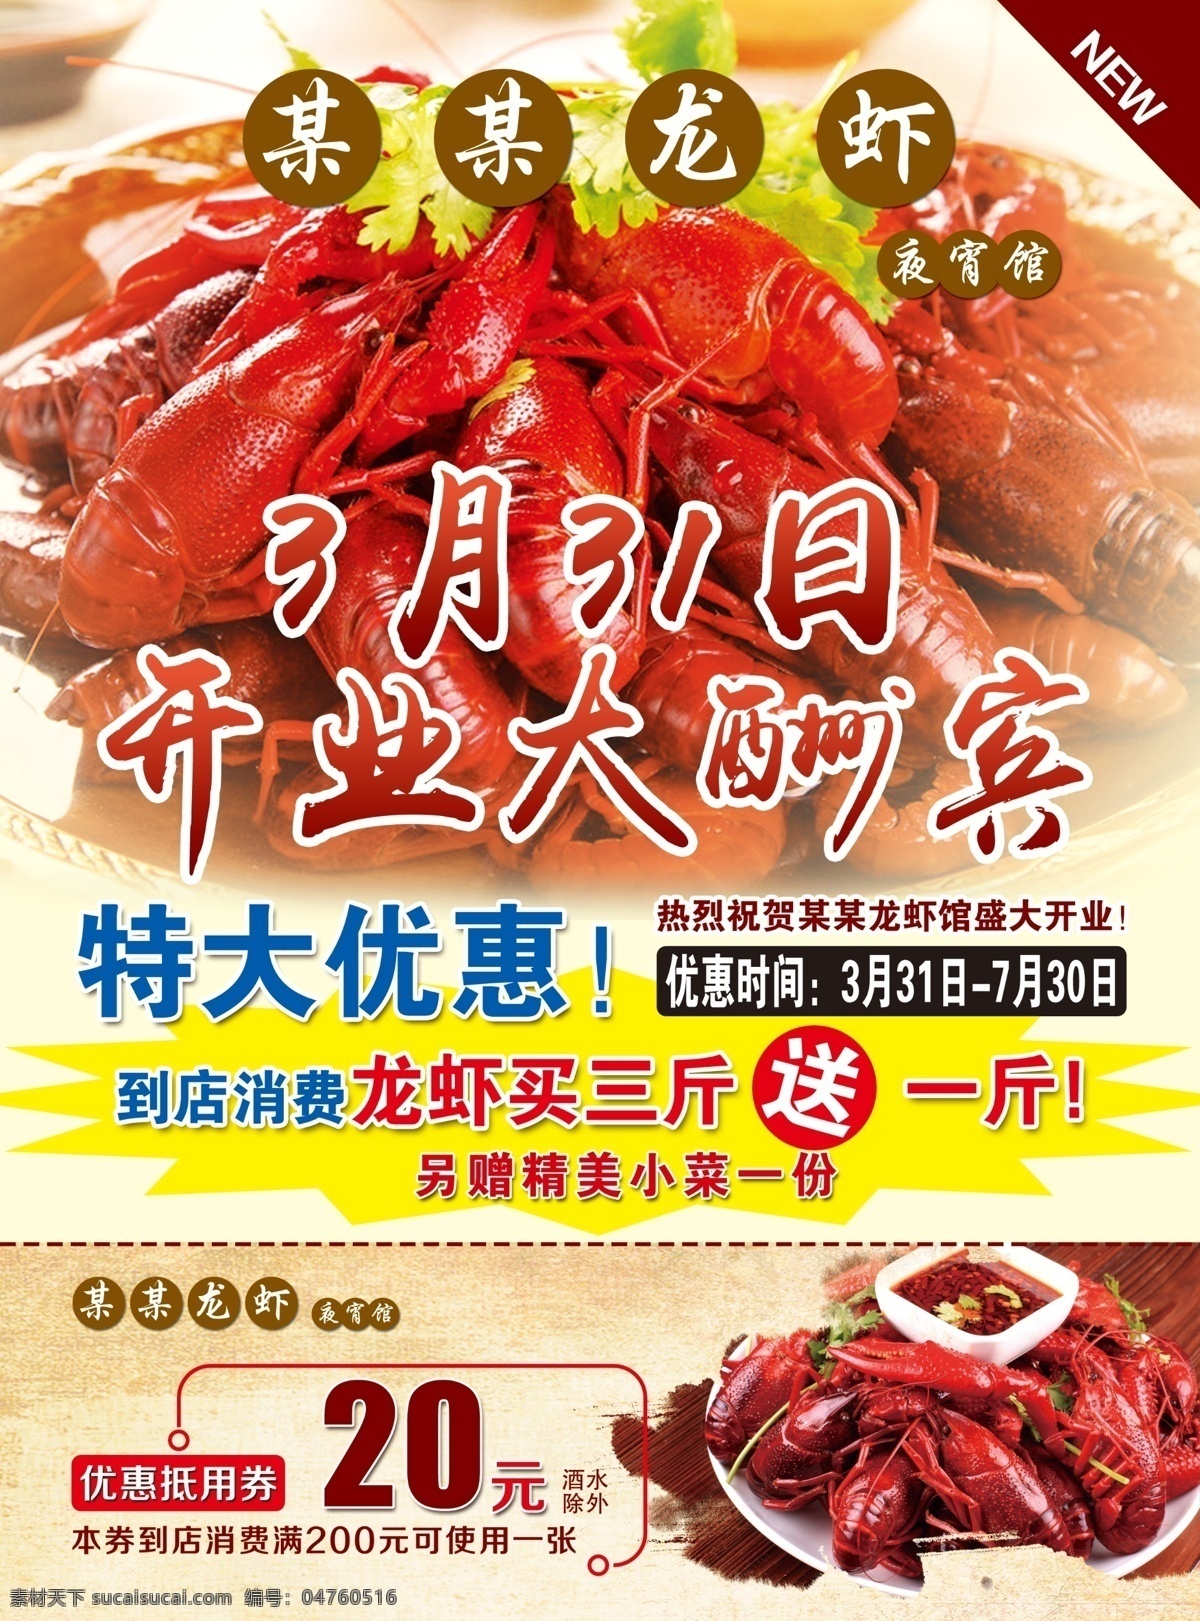 小 龙虾 宣传单 页 a4 小龙虾 宣传单页 海报 美食 夜宵 dm宣传单